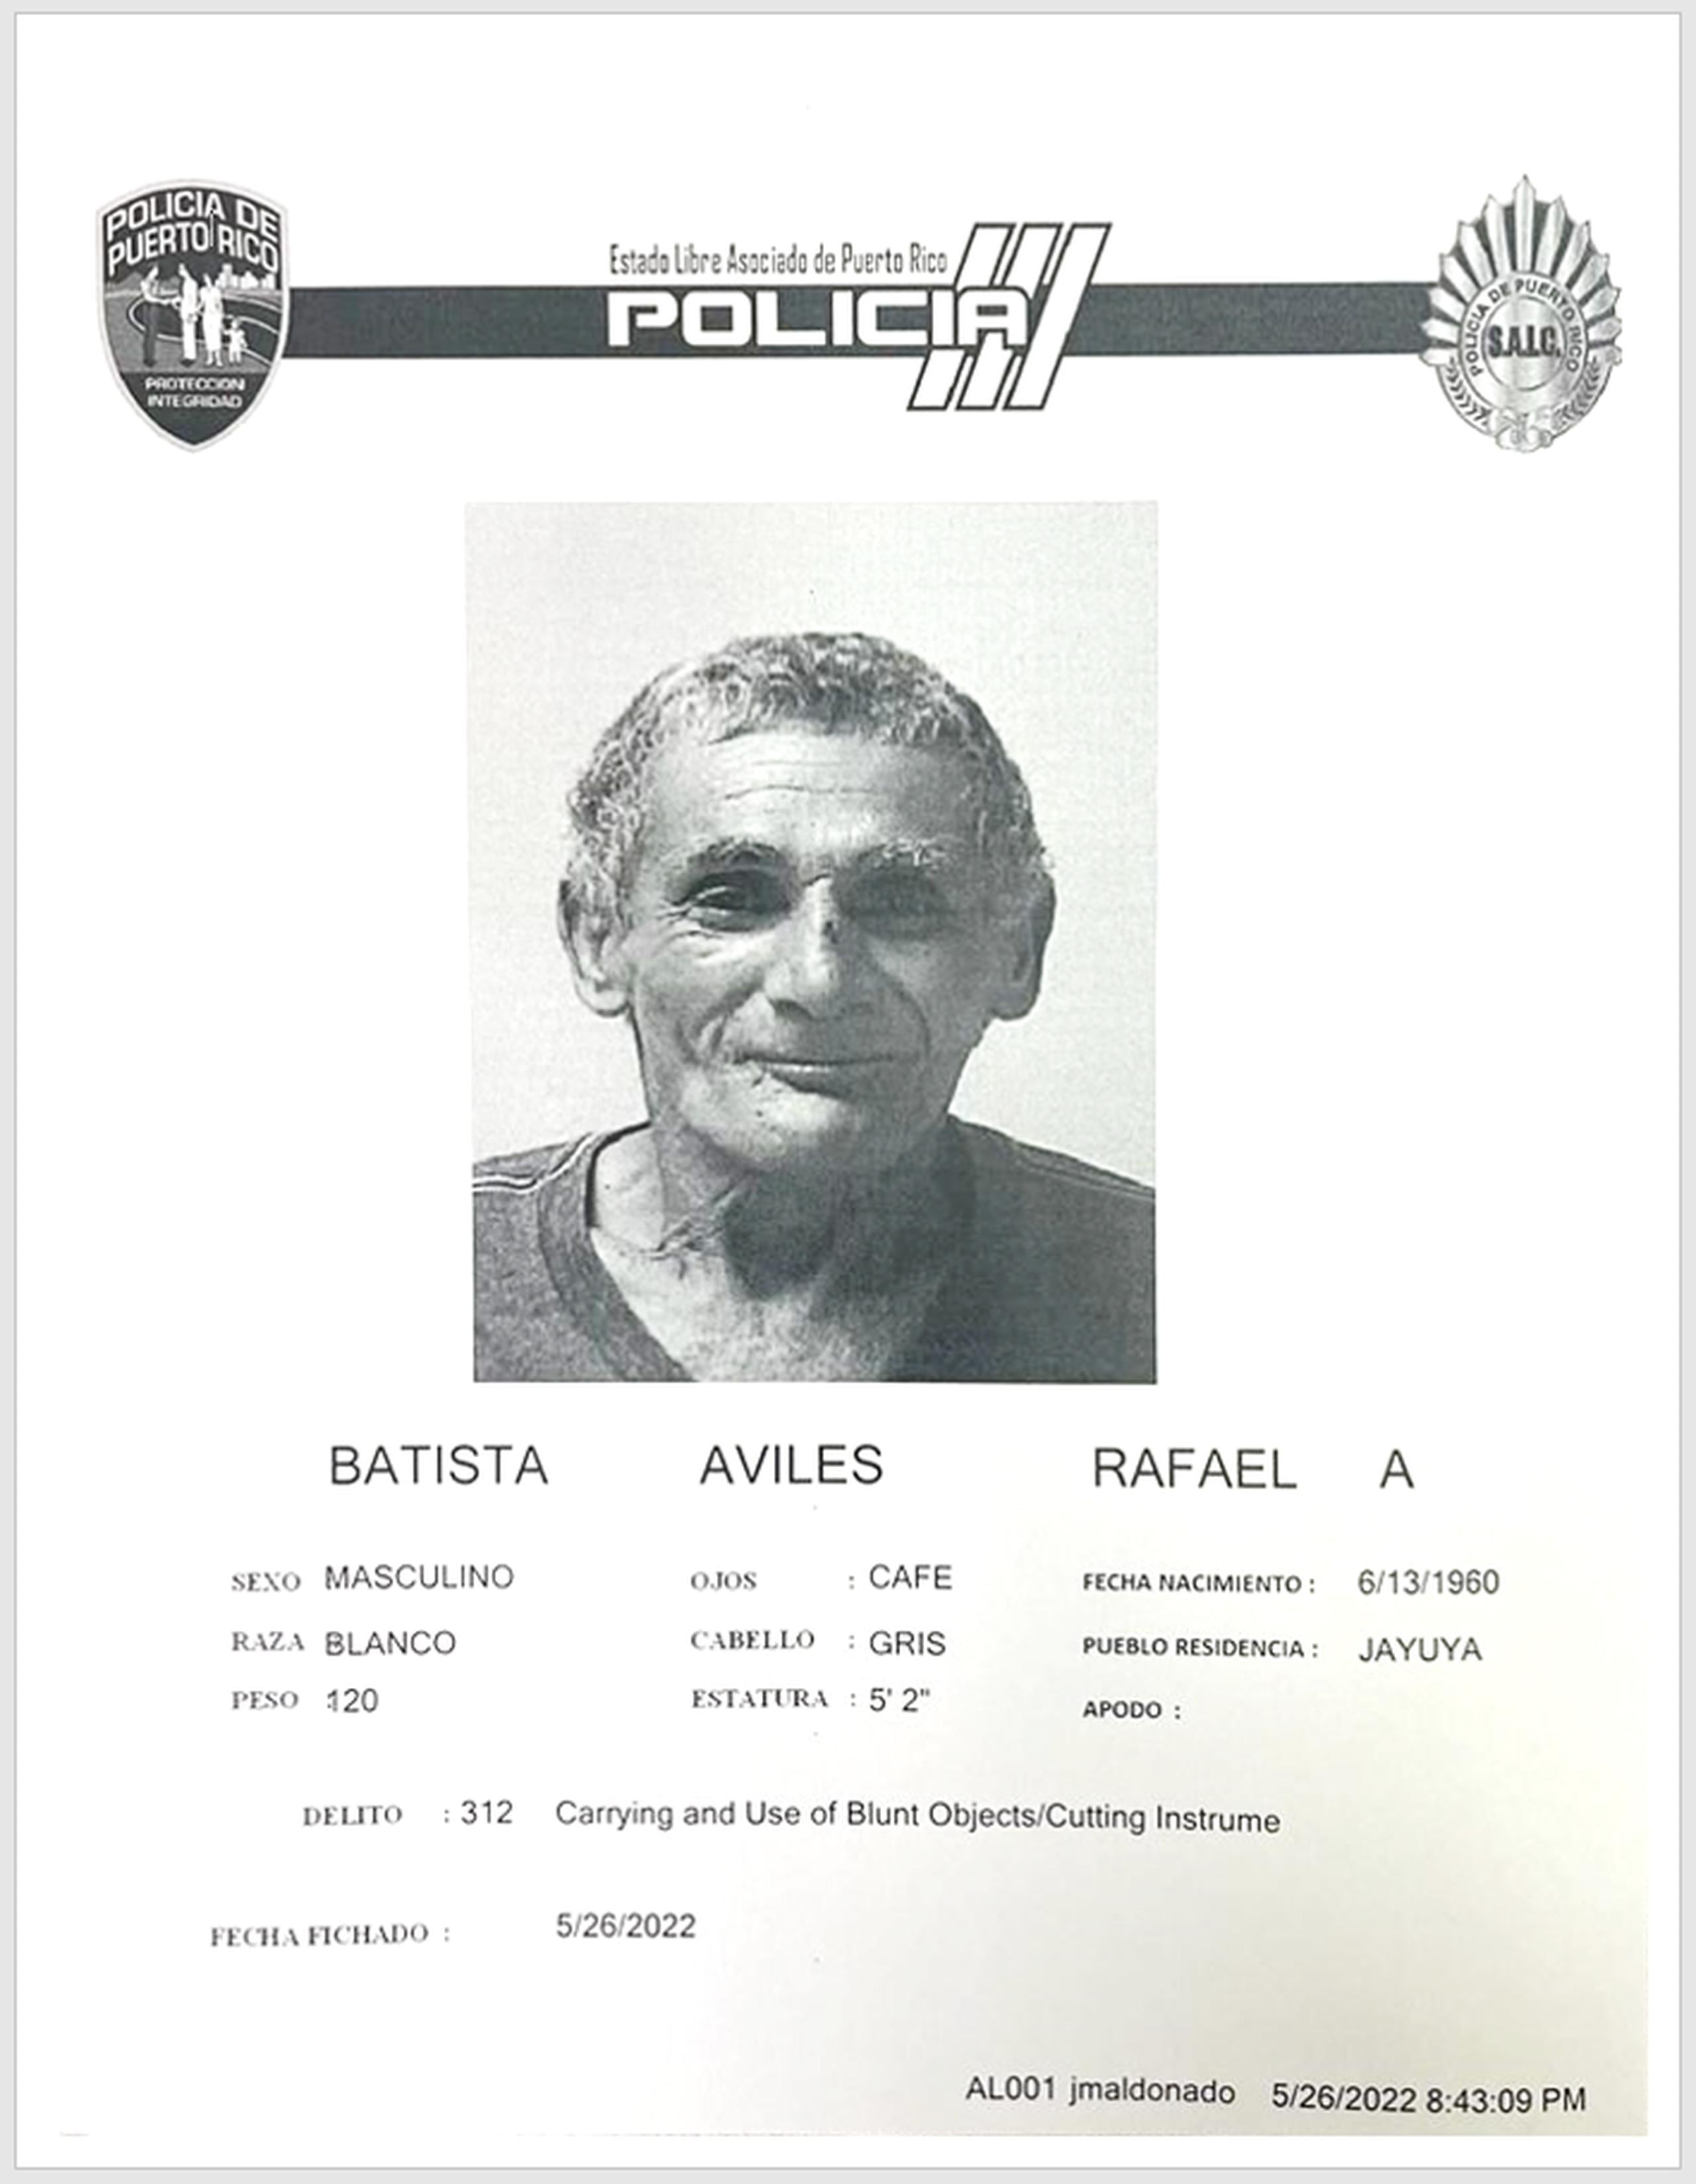 La vista preliminar contra Rafael A. Batista Avilés fue señalada para el 8 de junio.